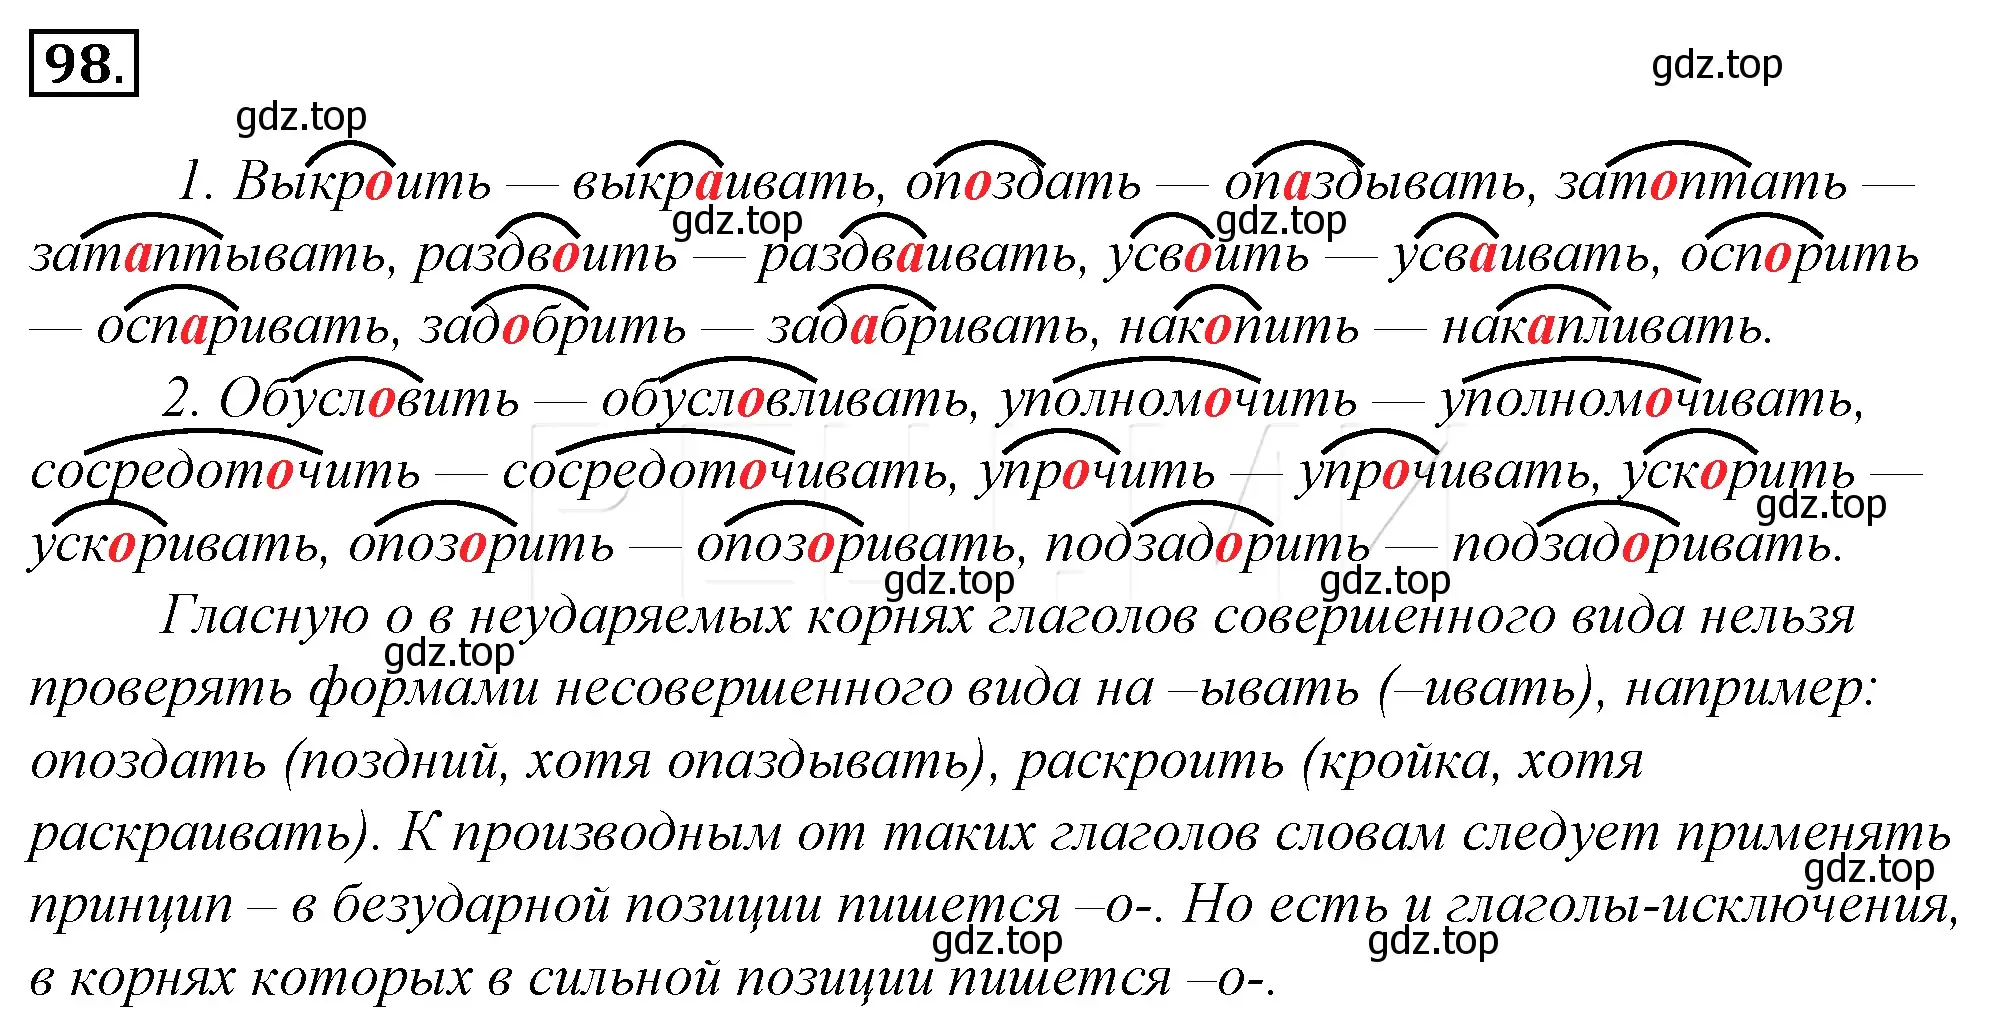 Решение 4. номер 122 (страница 116) гдз по русскому языку 10-11 класс Гольцова, Шамшин, учебник 1 часть